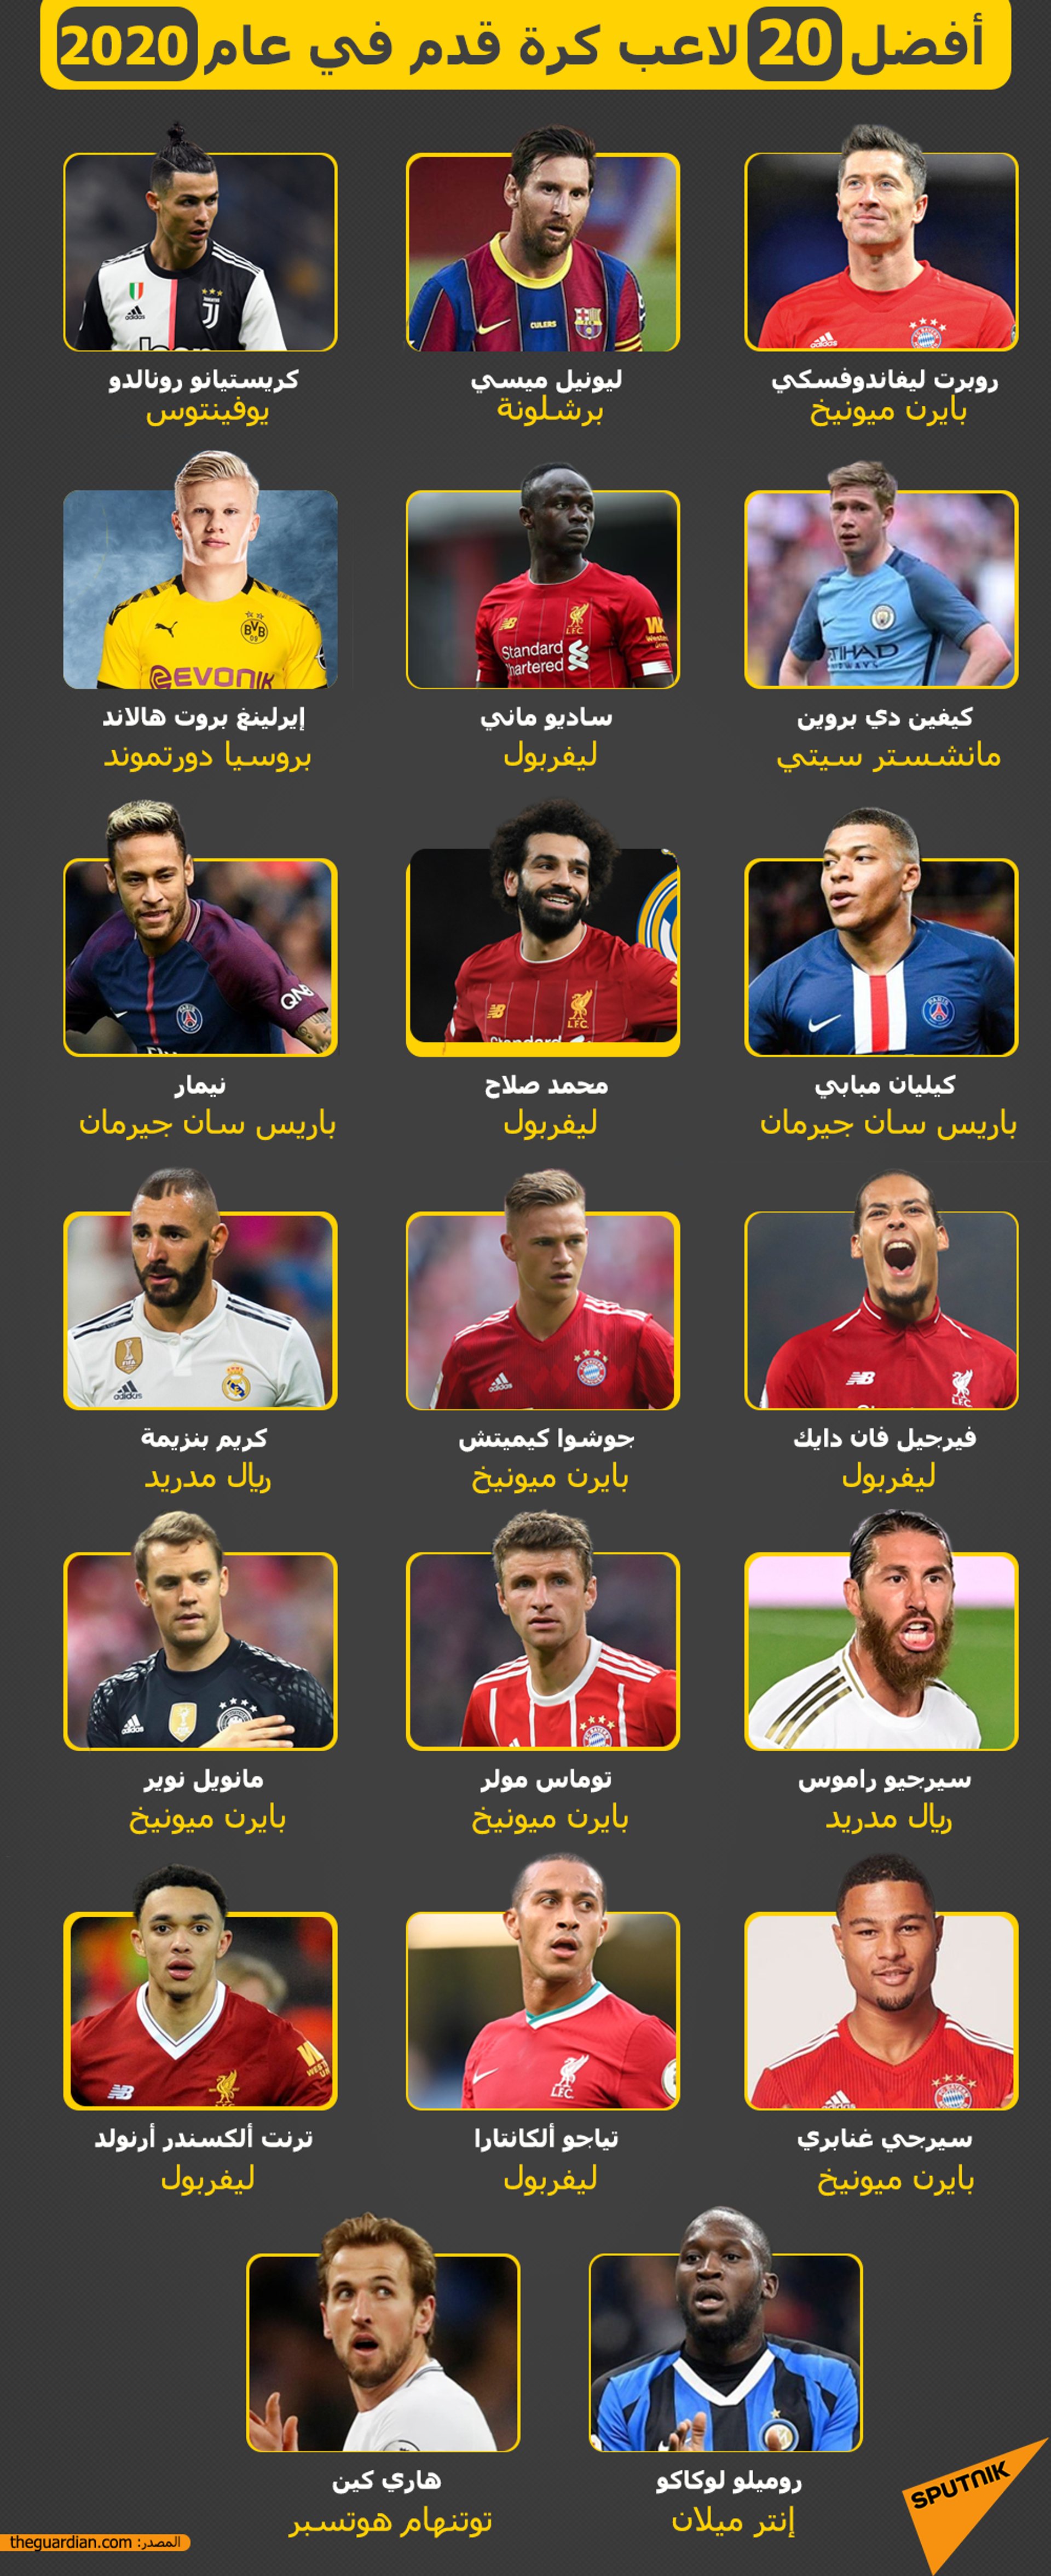 أفضل 20 لاعب كرة قدم في عام 2020 - سبوتنيك عربي, 1920, 23.11.2021